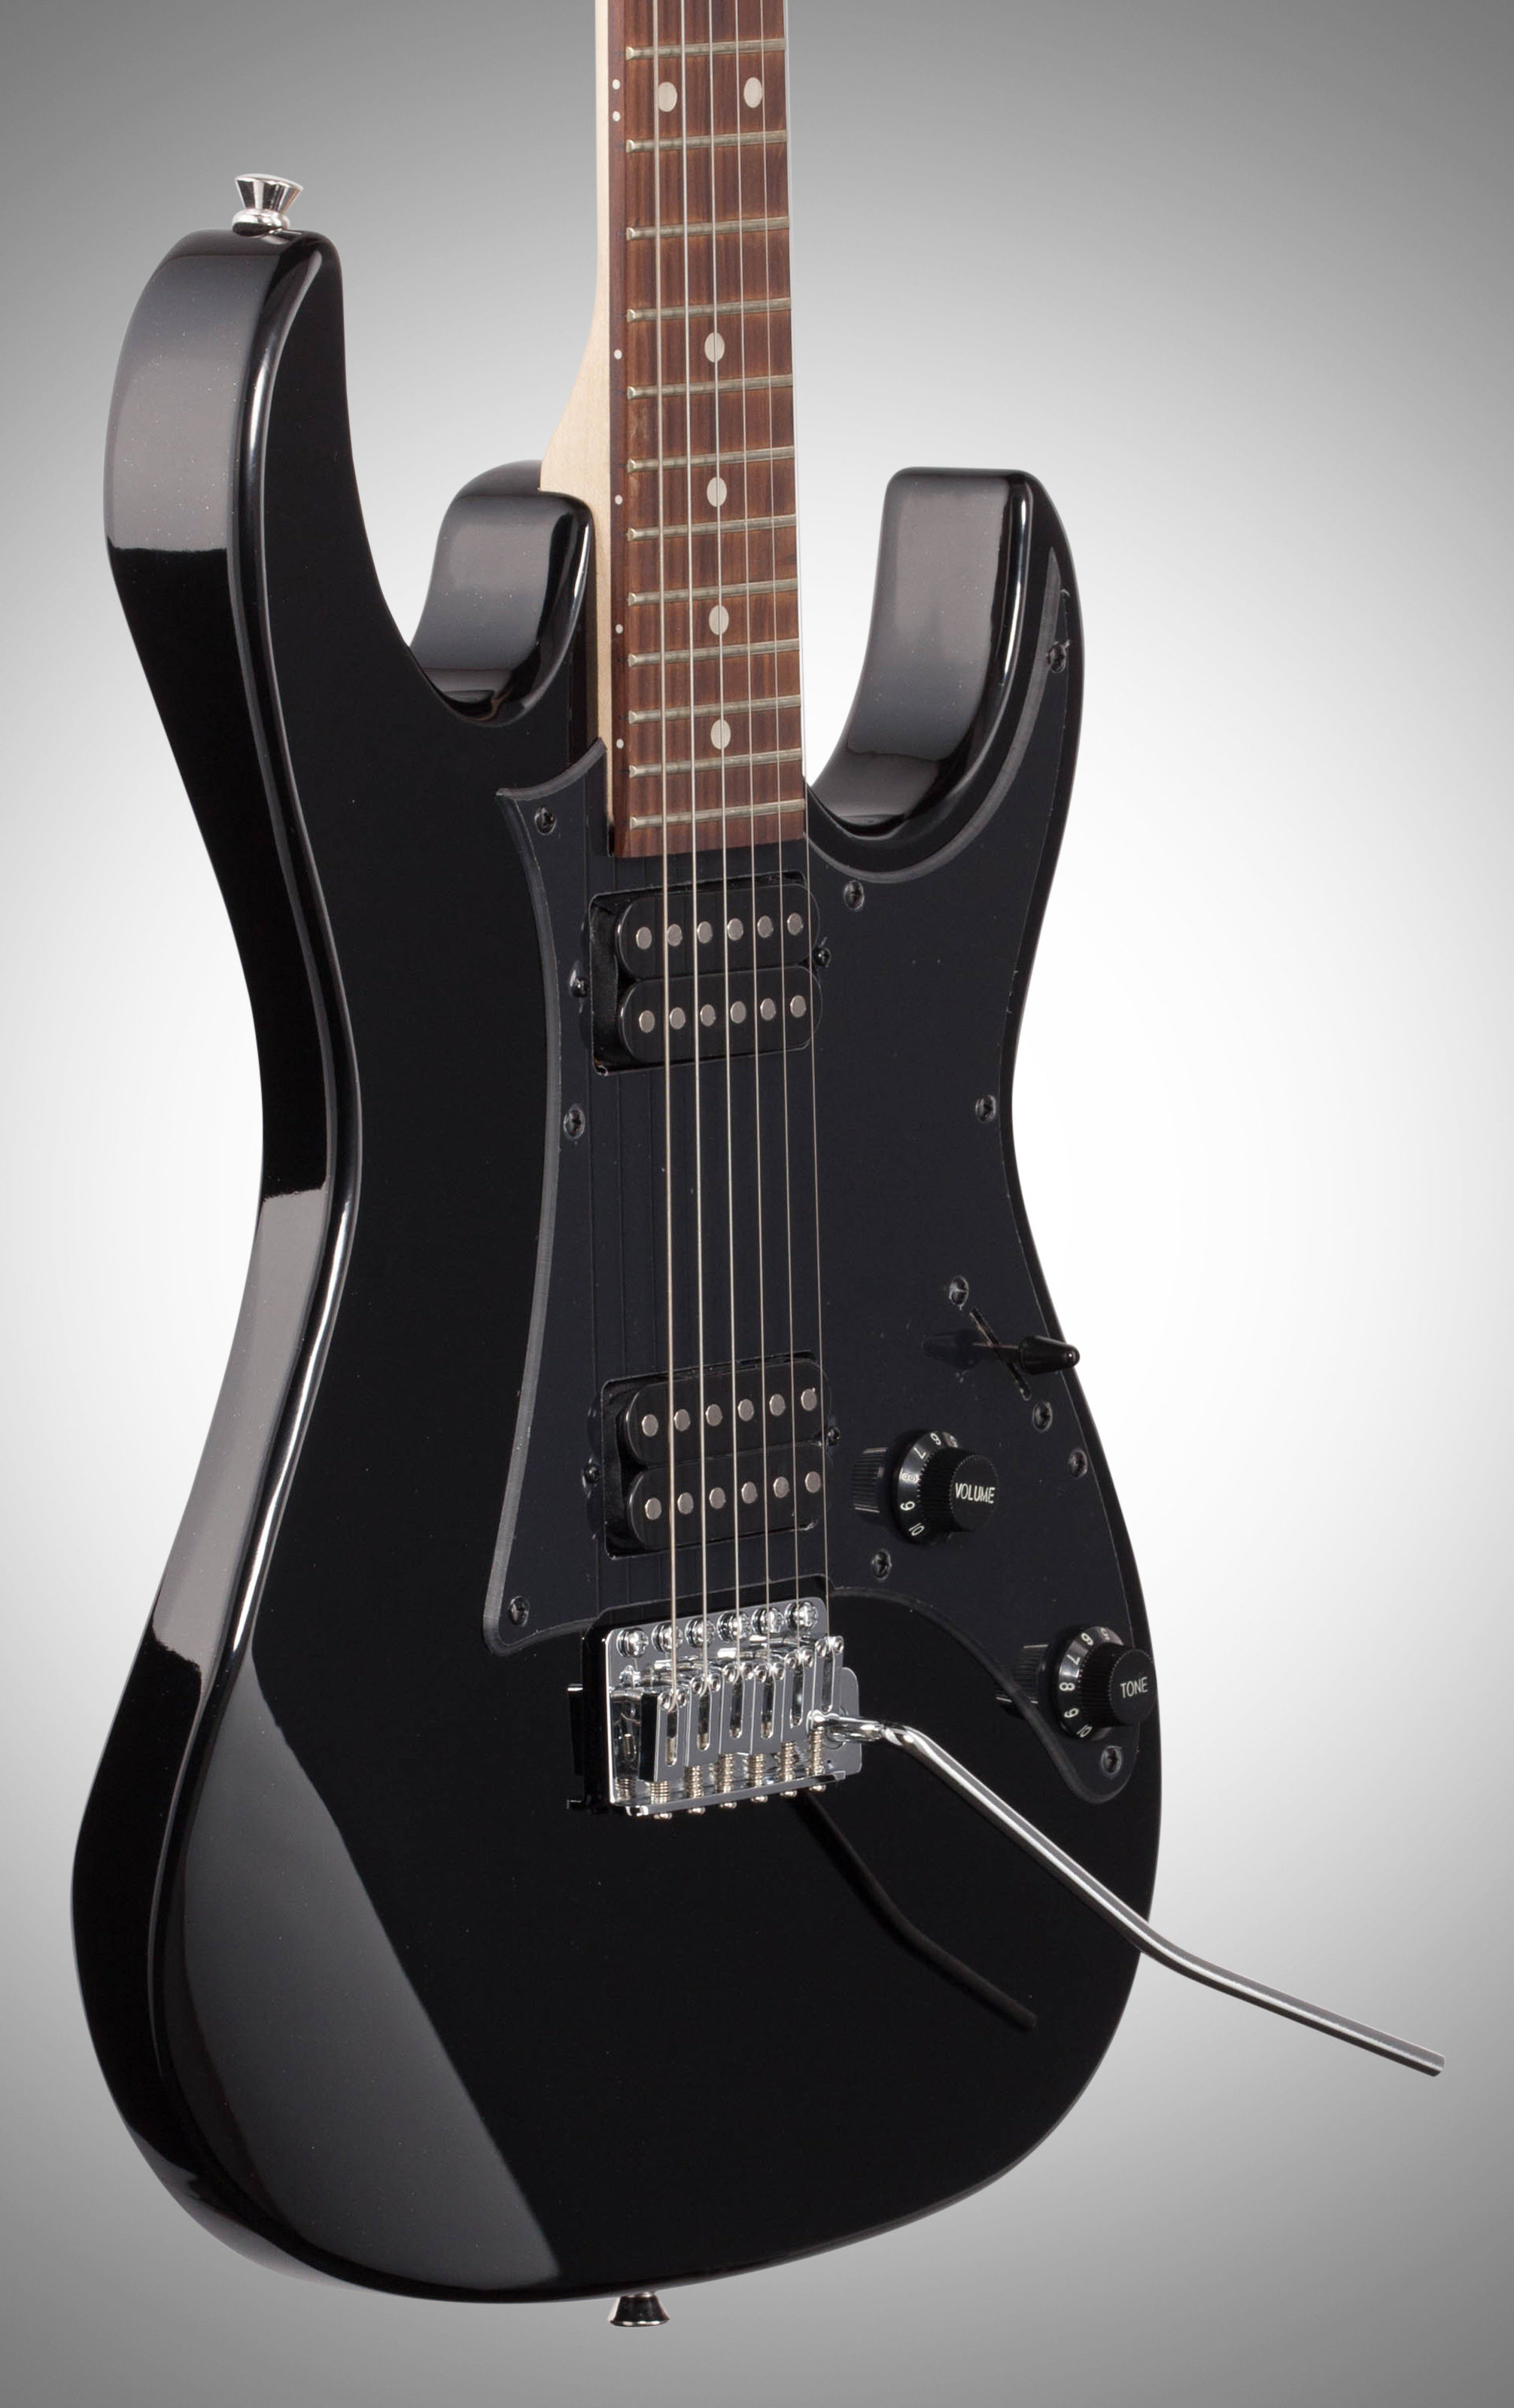 Ibanez GRX20Z Electric Guitar, Black
